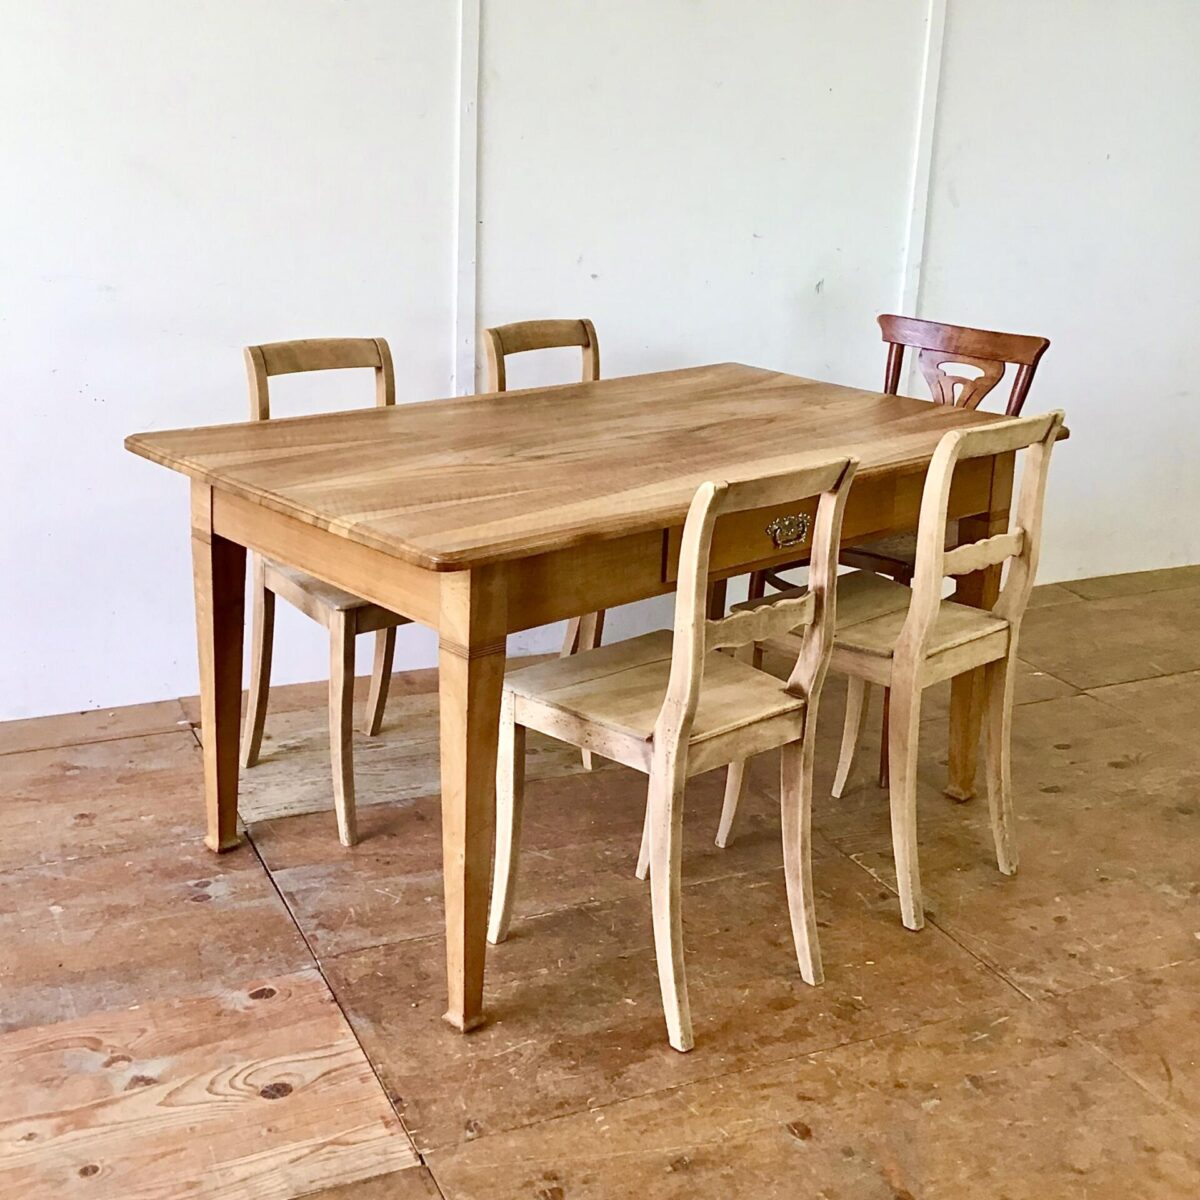 Nussbaum Biedermeier Tisch 154x89cm Höhe 77cm. Dieser Esstisch oder grosse Schreibtisch ist komplett aus Nussbaum Vollholz. Die Holzoberfläche ist lackiert. Lebhafte Holzmaserung, Tischkante leicht profiliert. Der Tisch bietet angenehm Platz für 6 Personen.